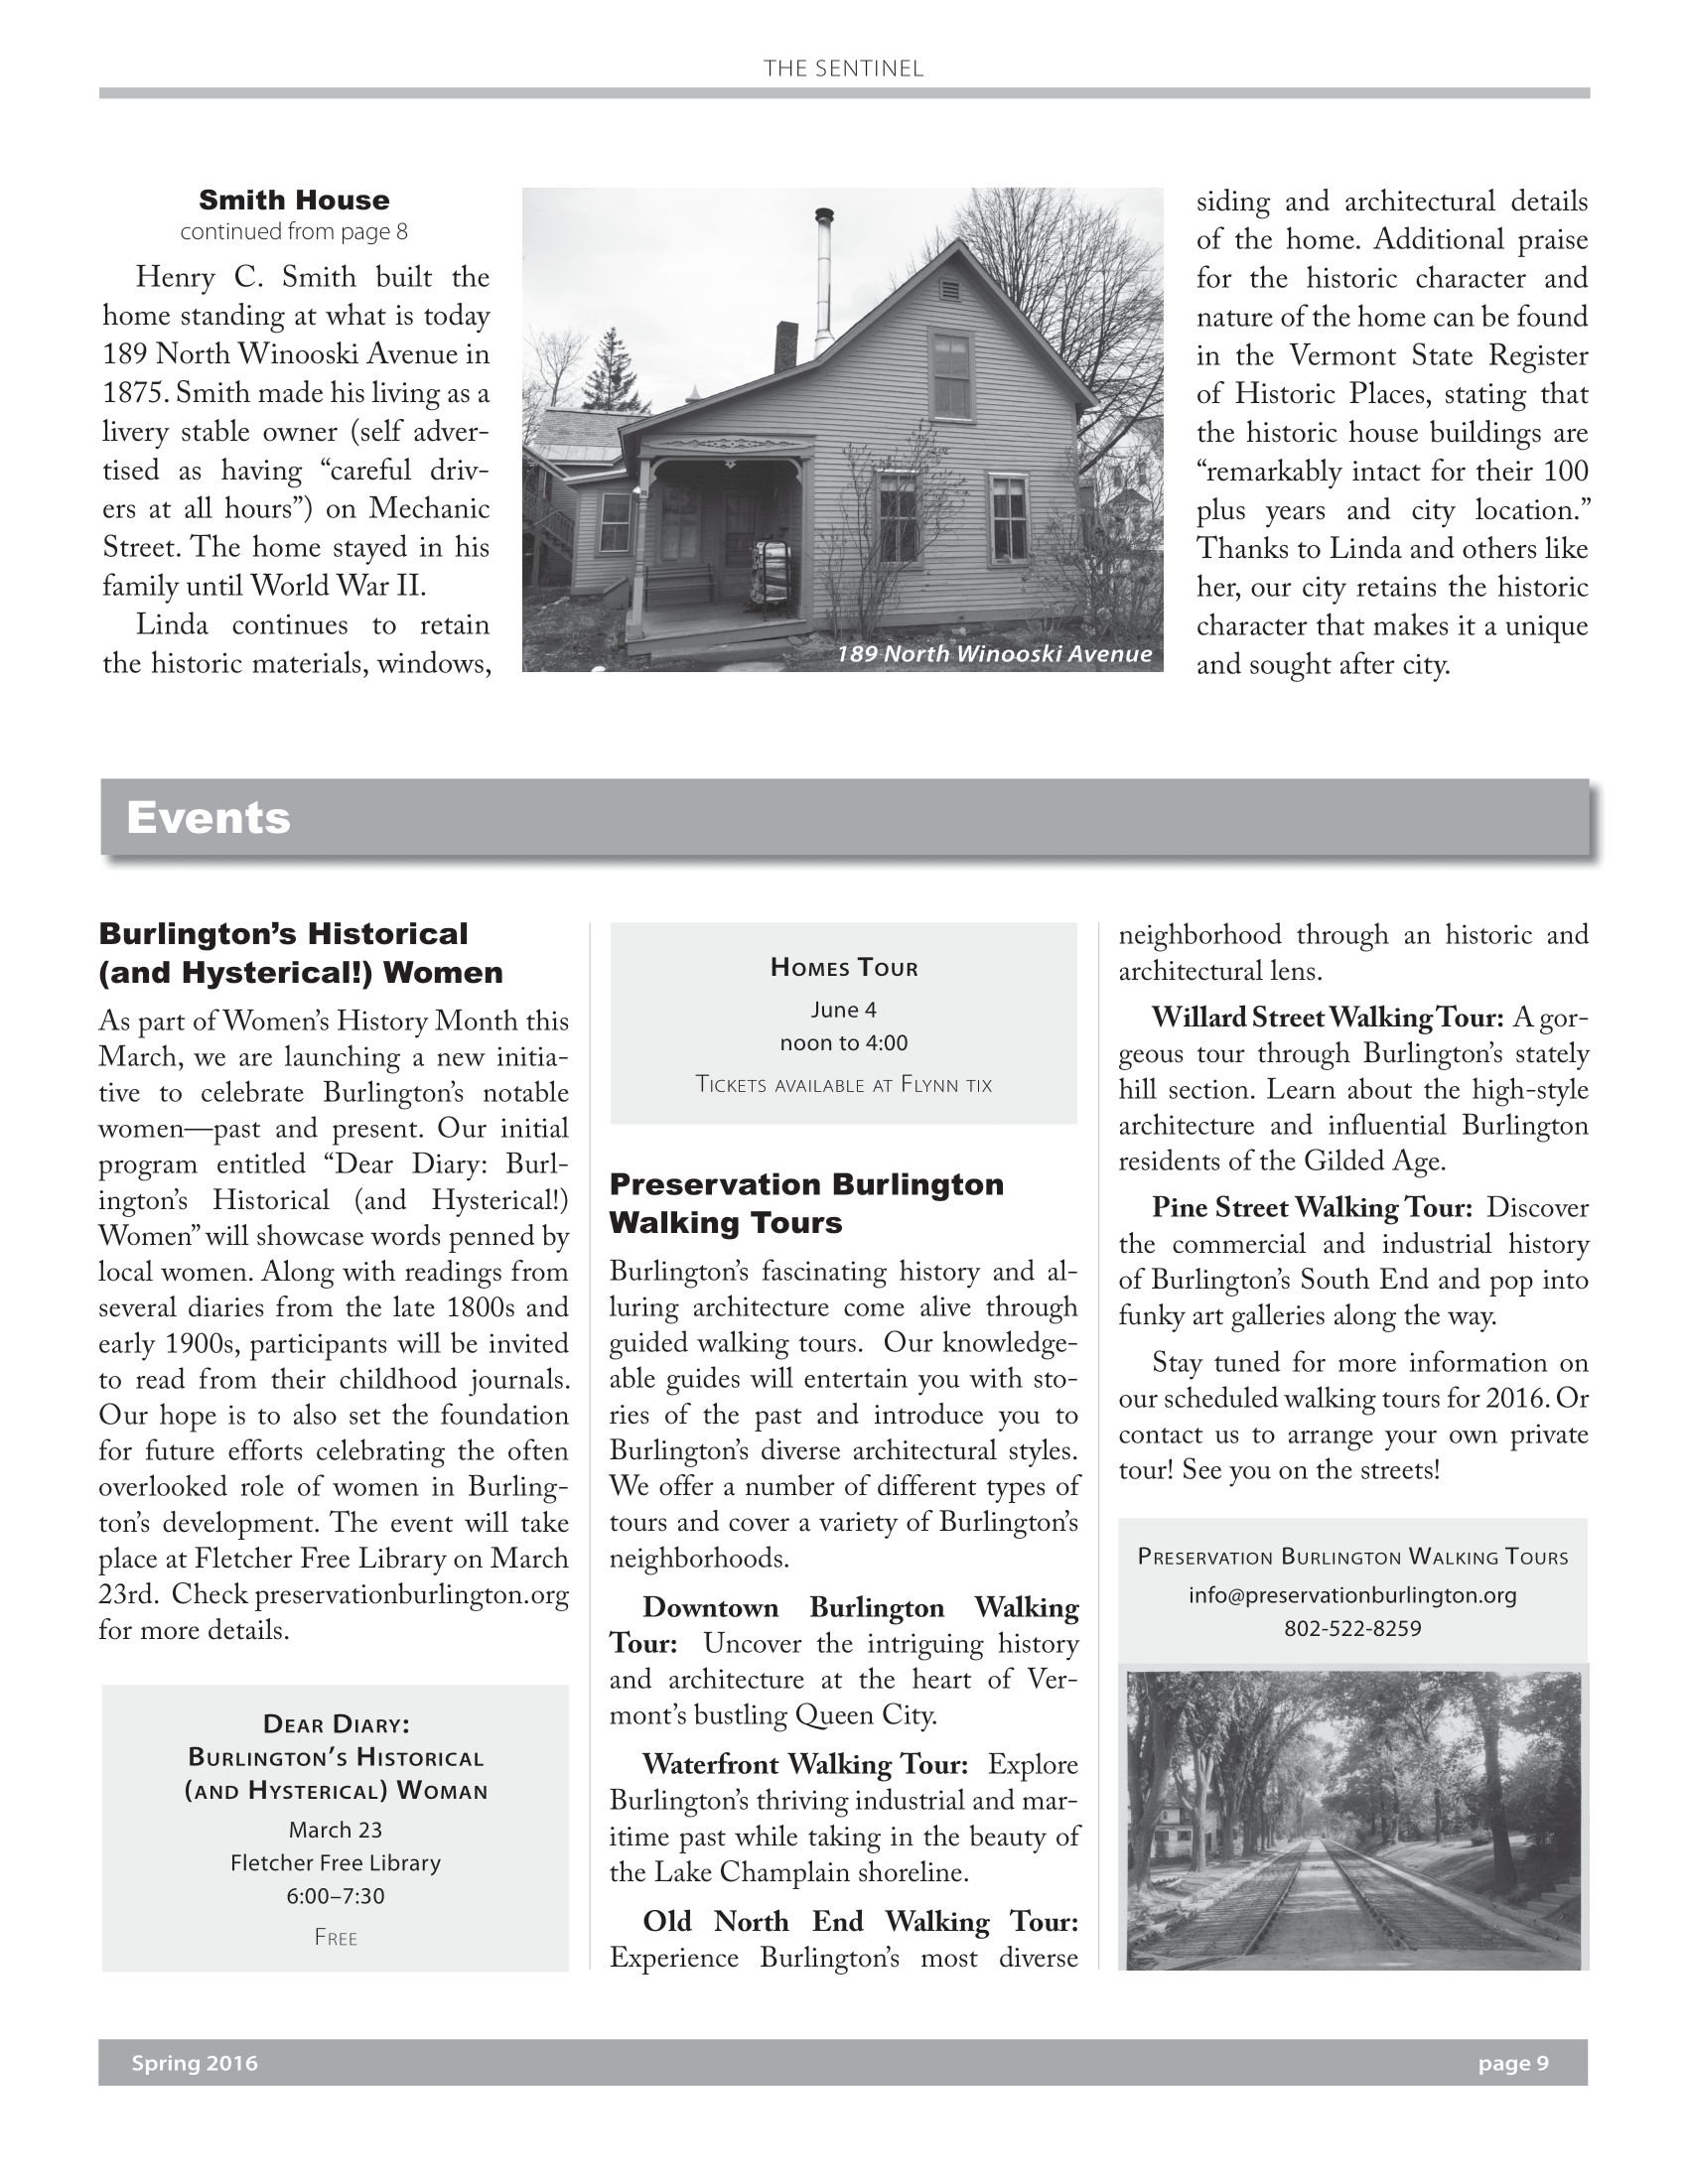 preservation-burlington-newsletter-spring-2016-09.png